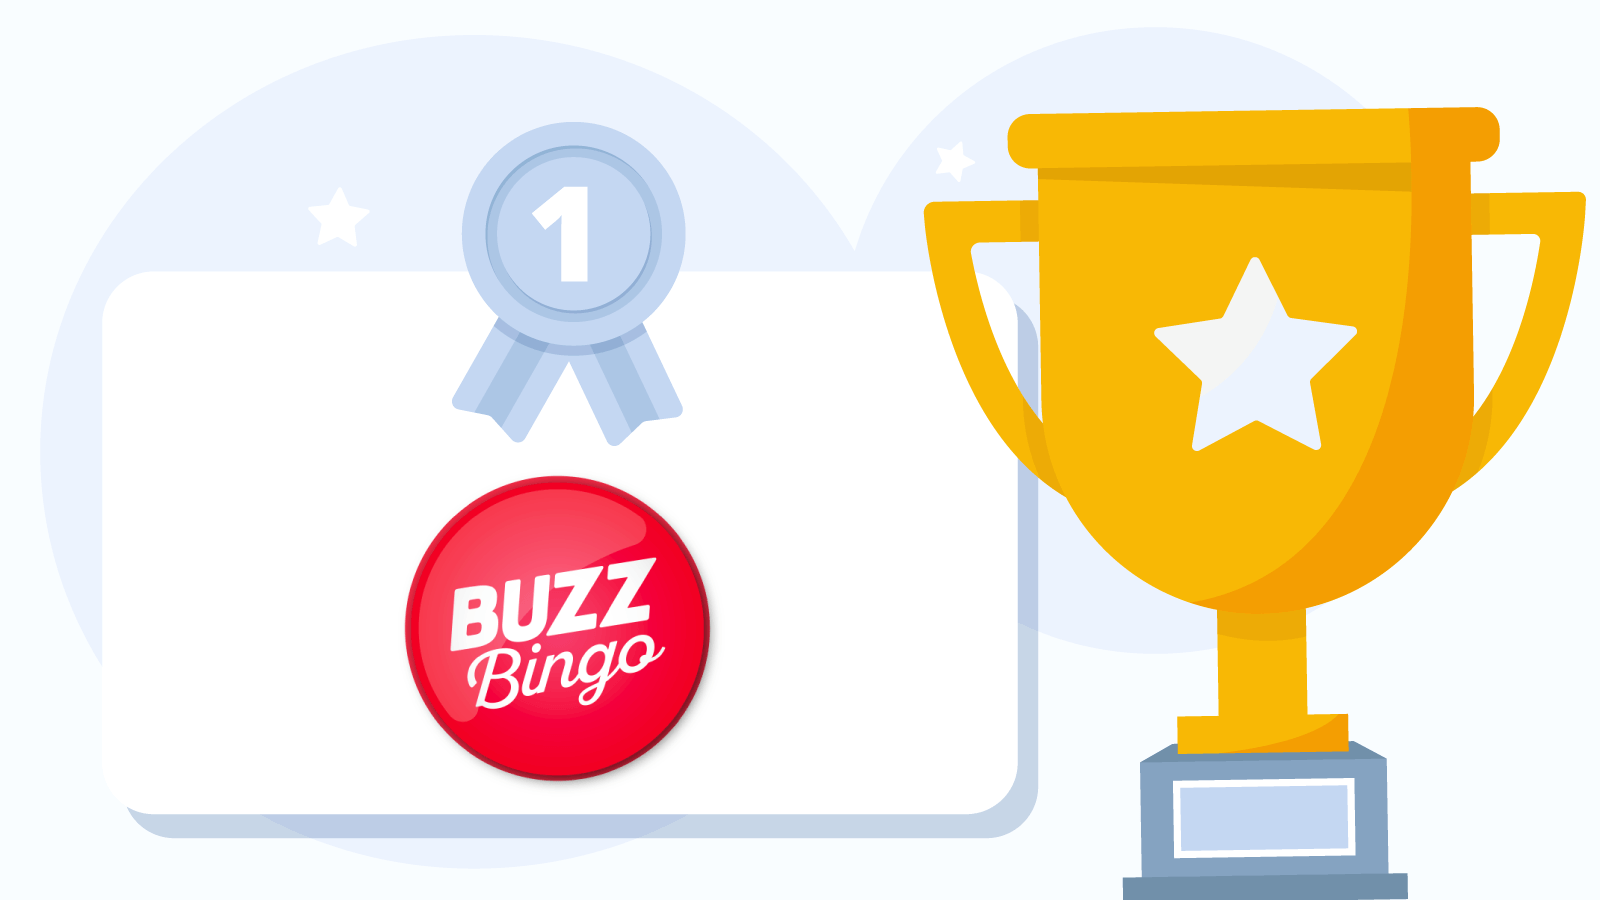 Buzz Bingo Best Slingo site in the UK